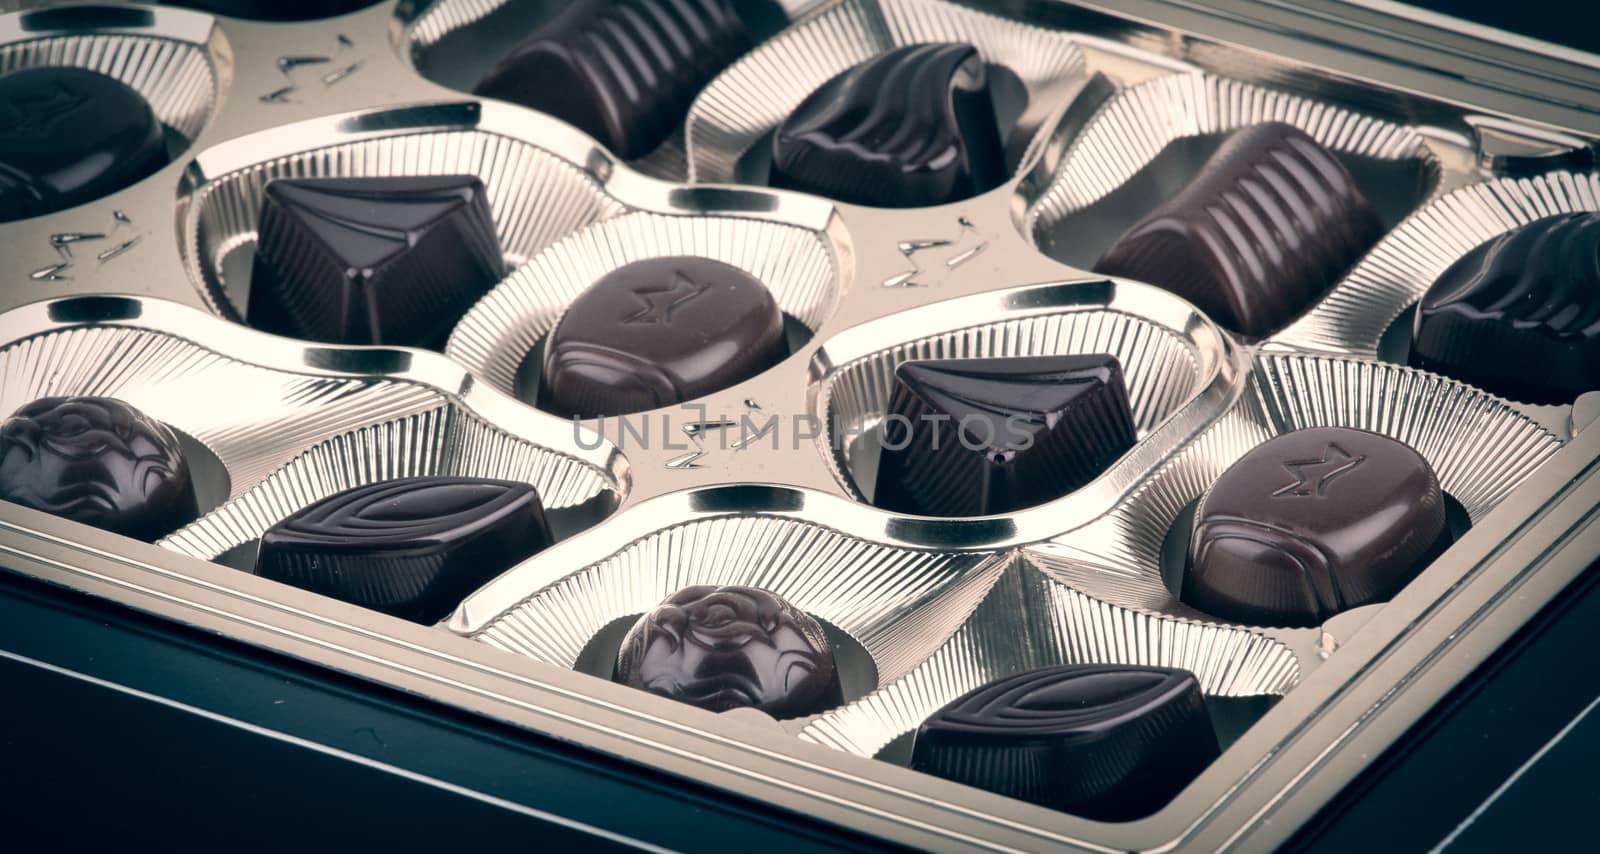 Chocolates by nenov